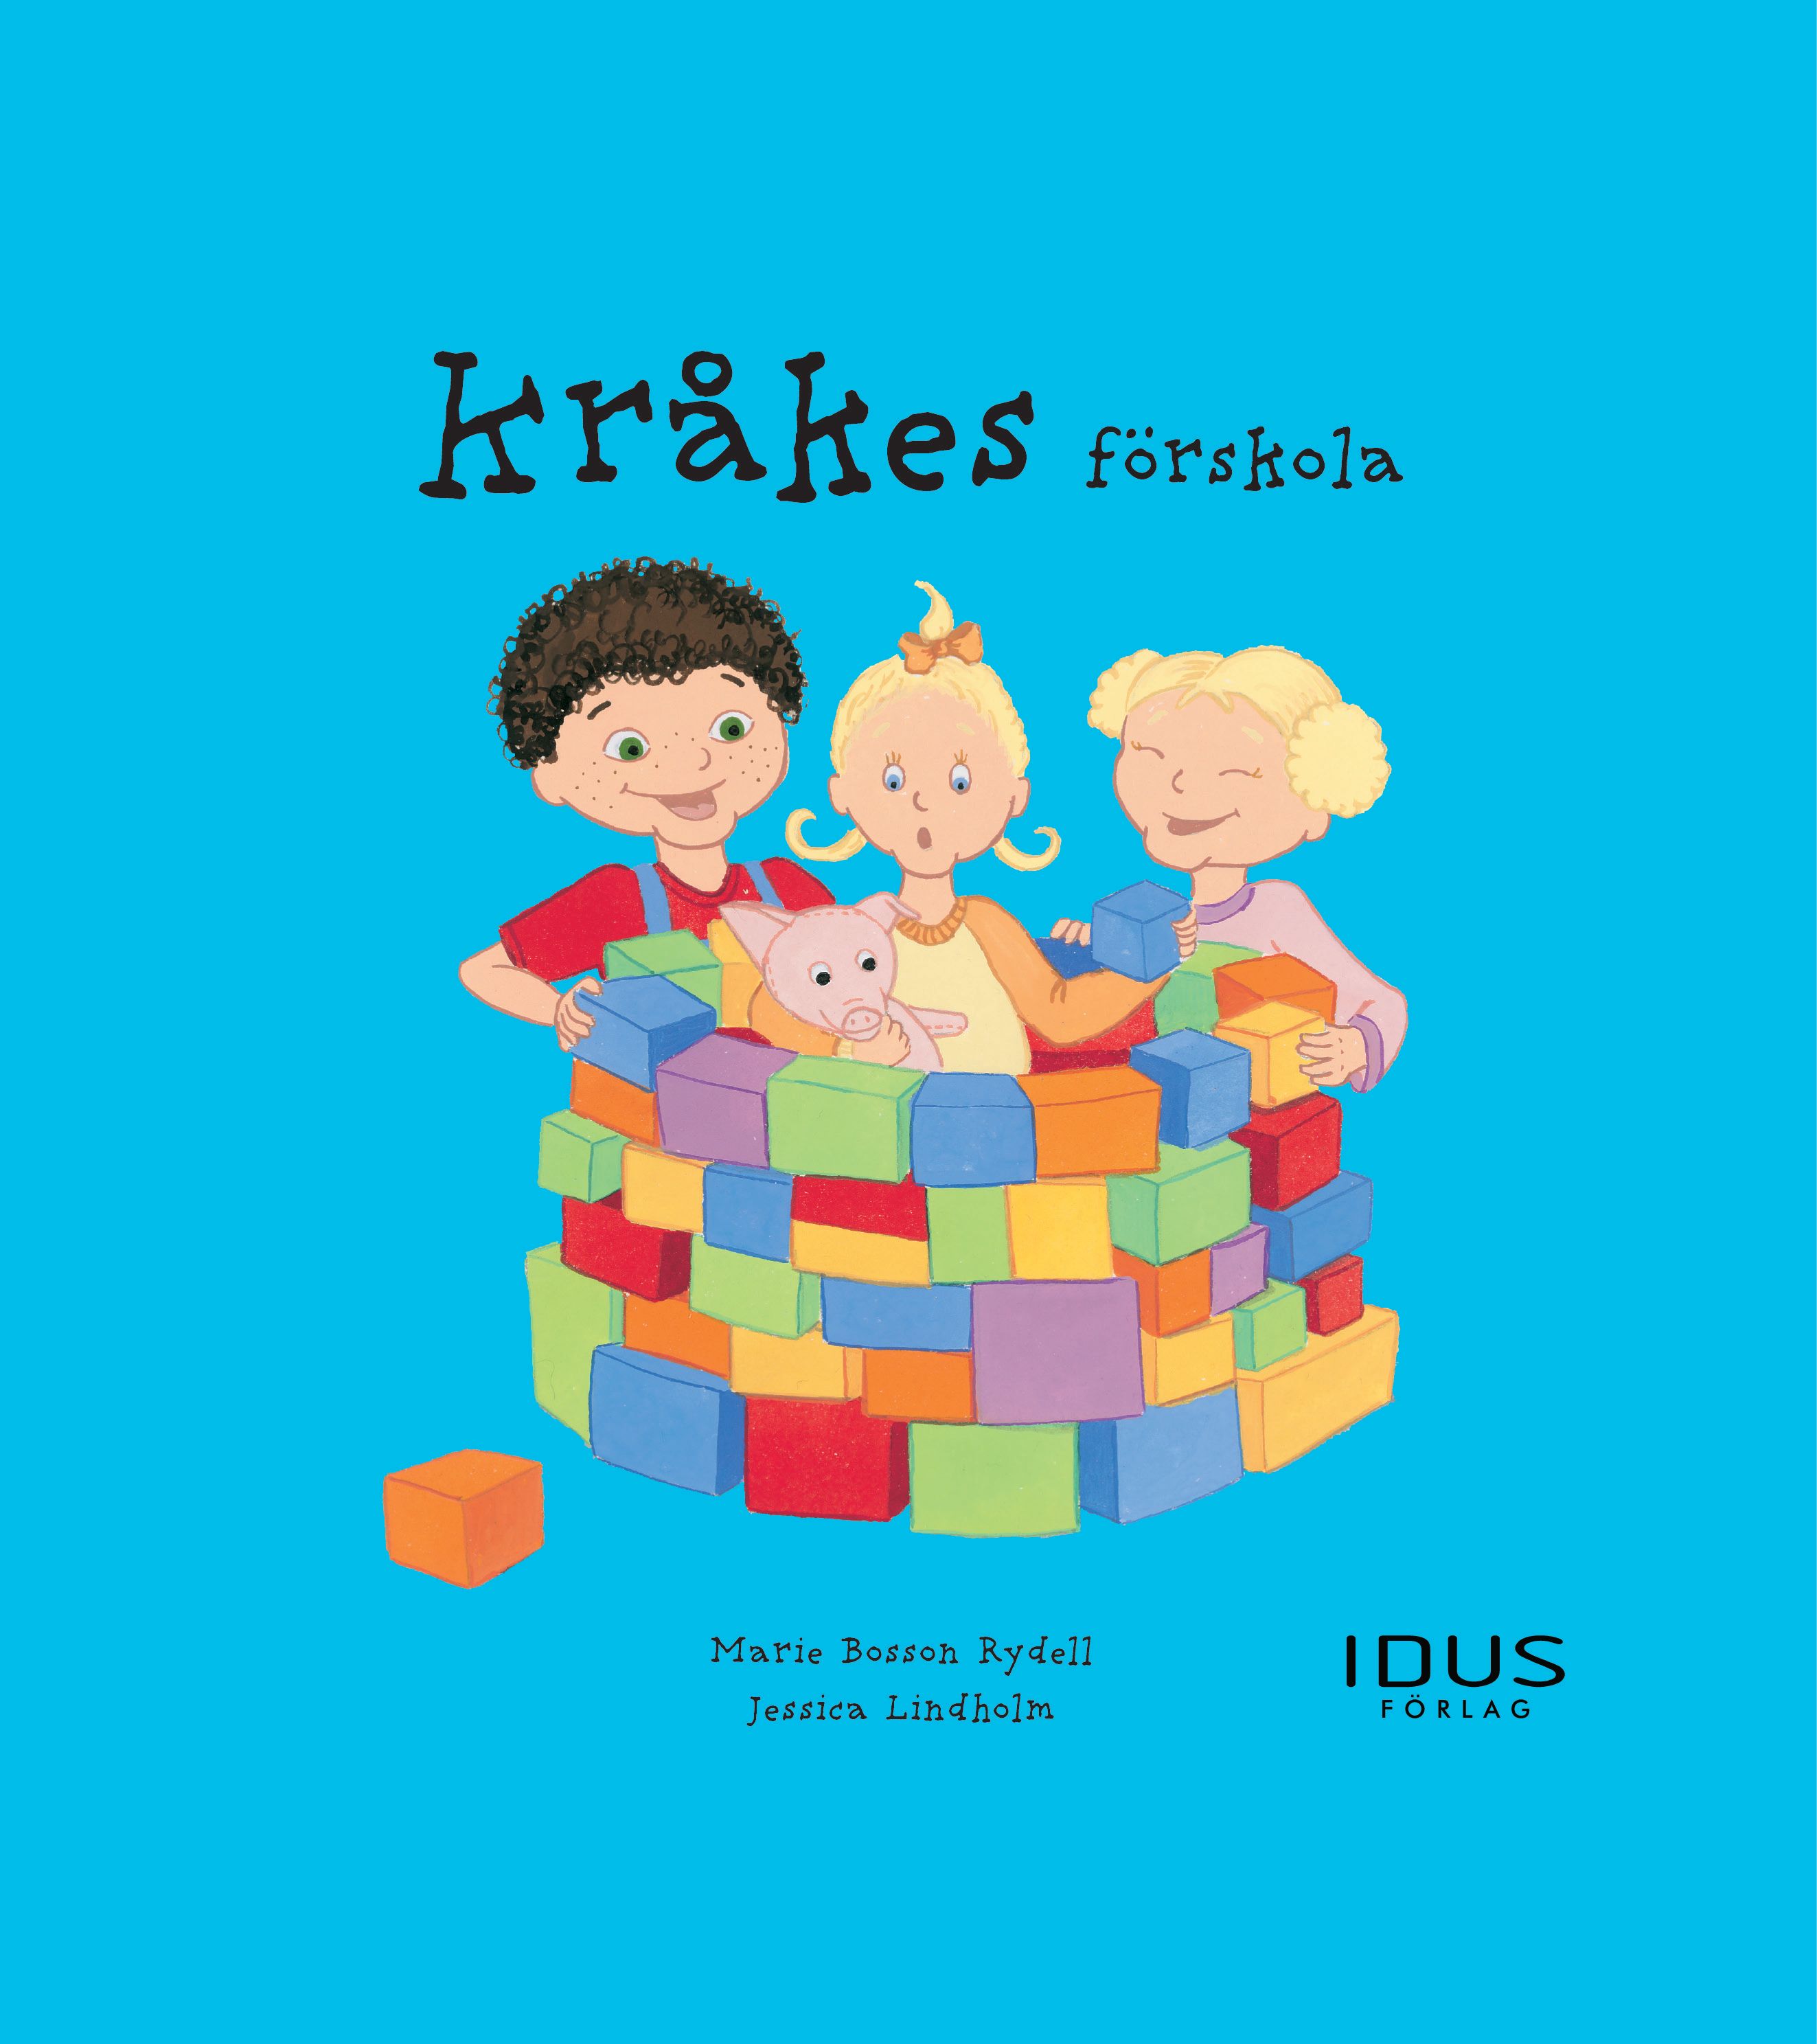 Kråkes förskola, eBook by Marie Bosson Rydell